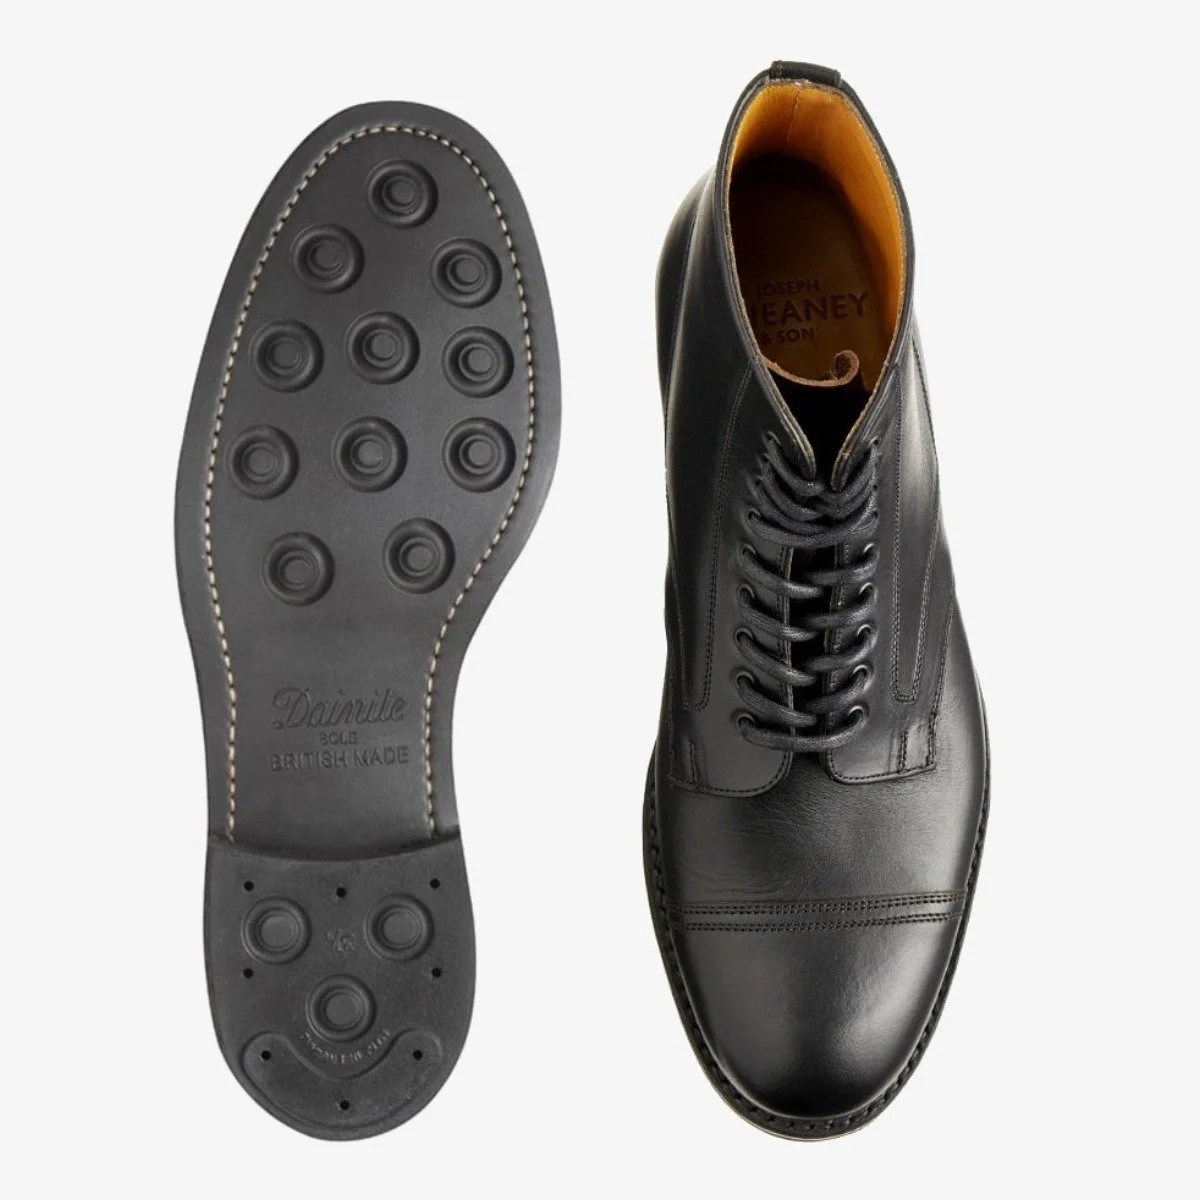 Cheaney Jarrow black toe cap men's lace-up boots